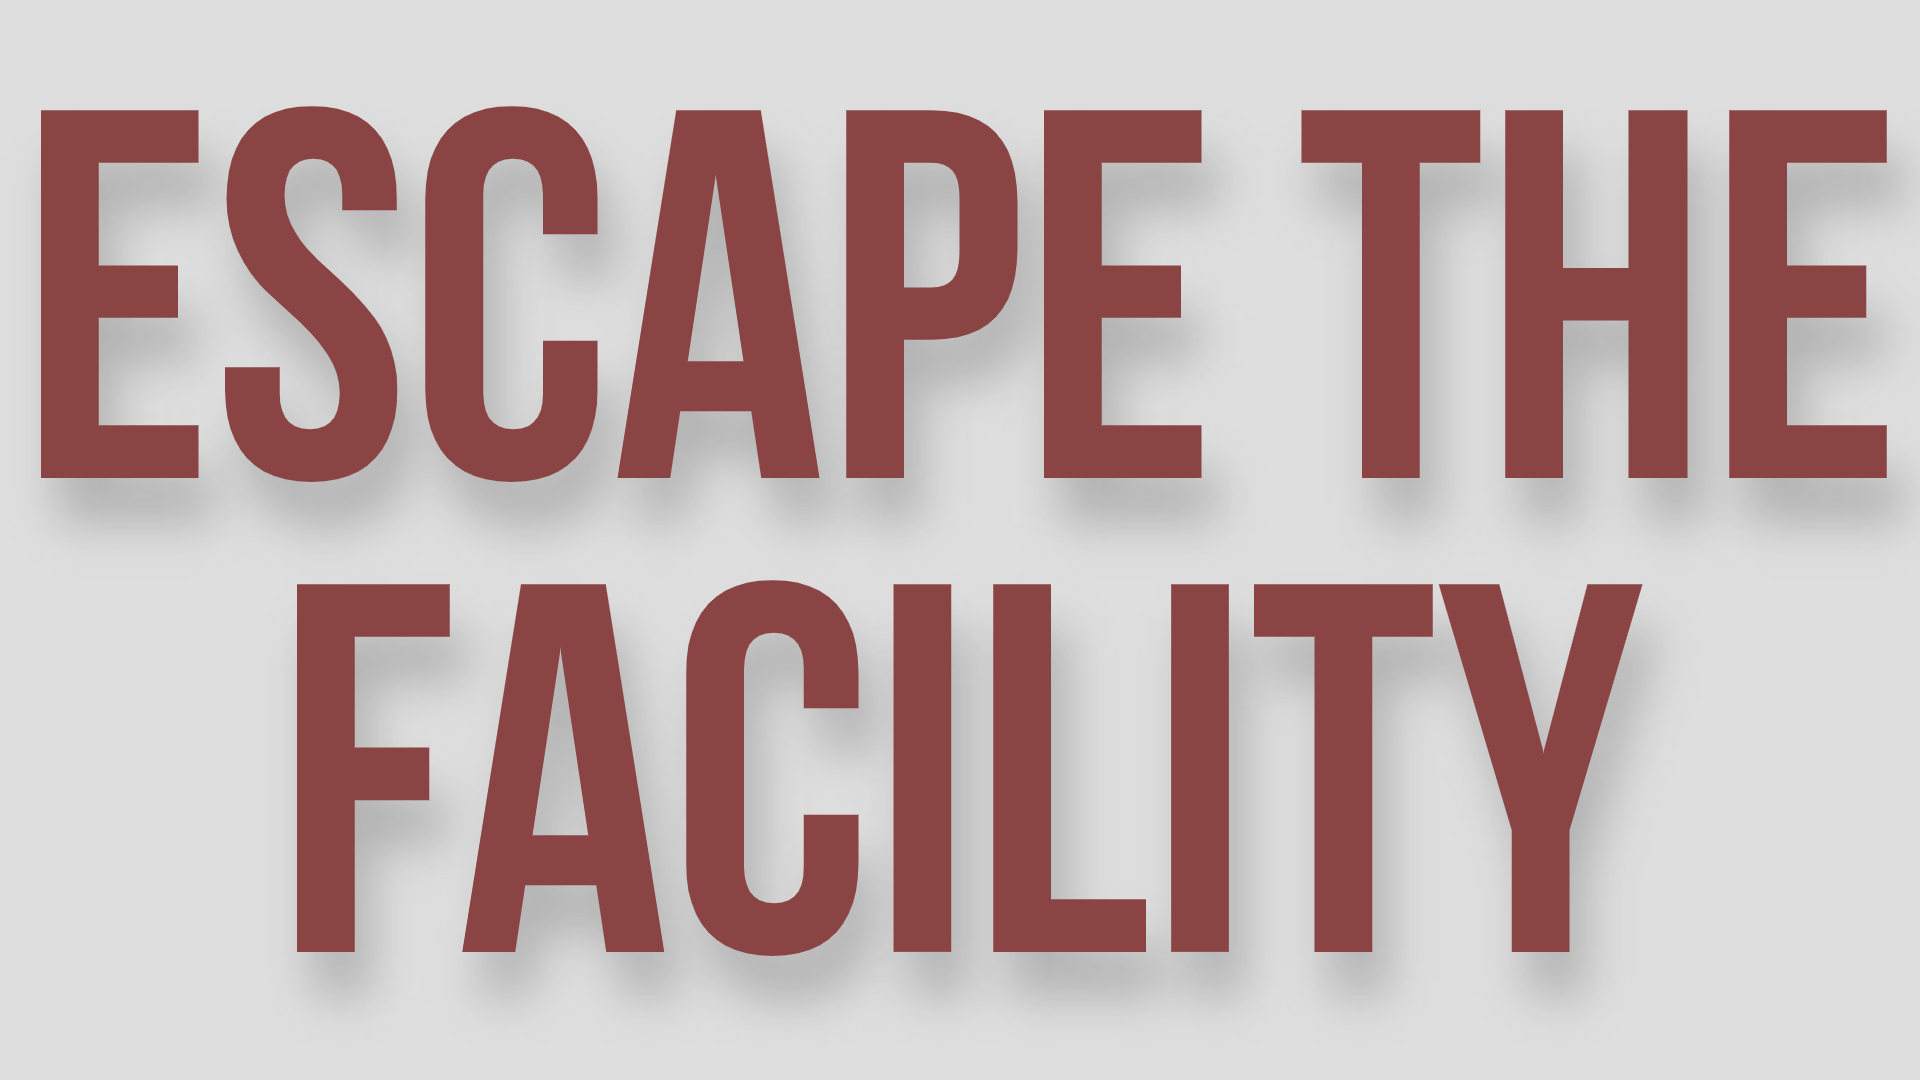 Escape the Facility